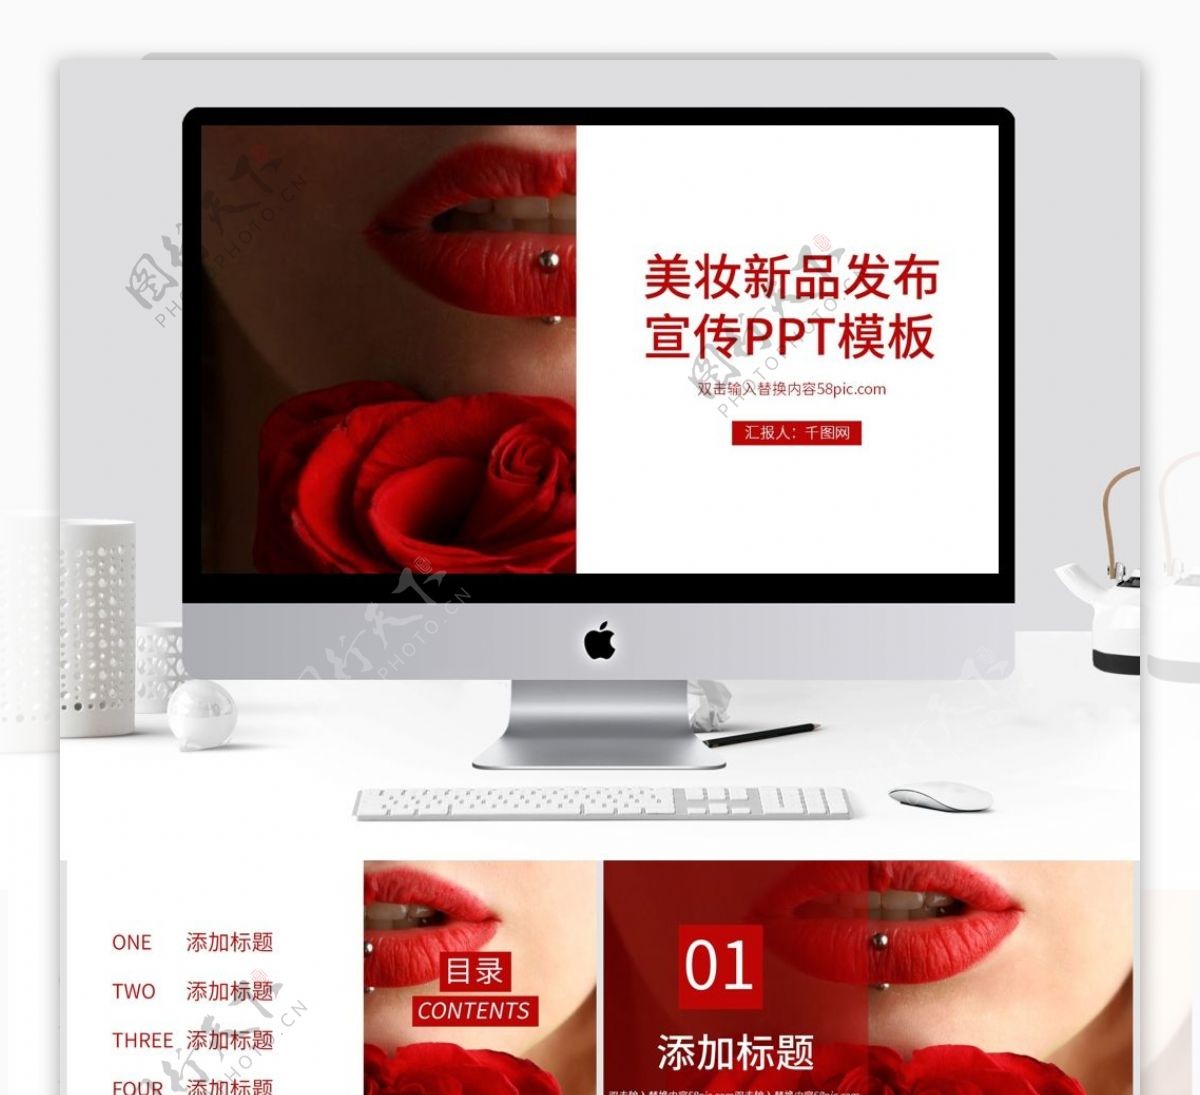 红色高端美妆新品发布宣传PPT模板